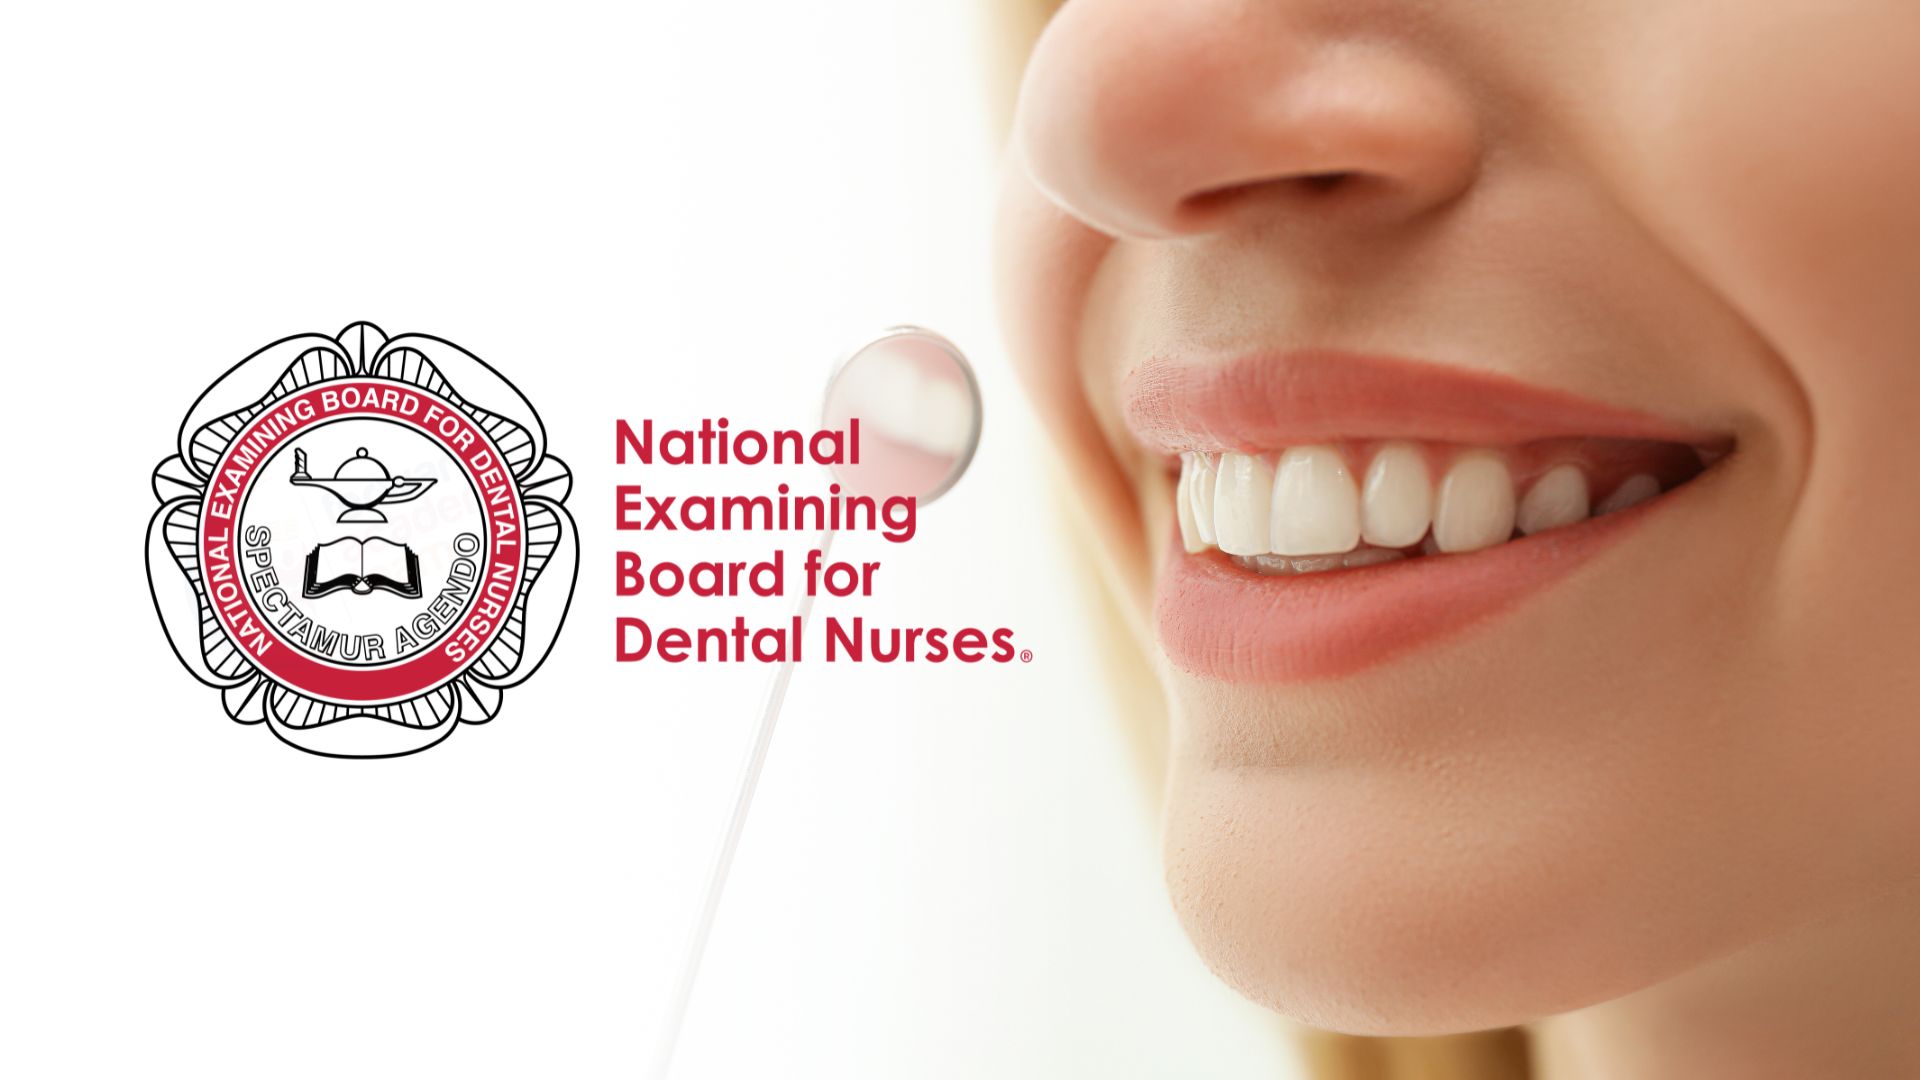 National Examining Board for Dental Nurses (NEBDN)